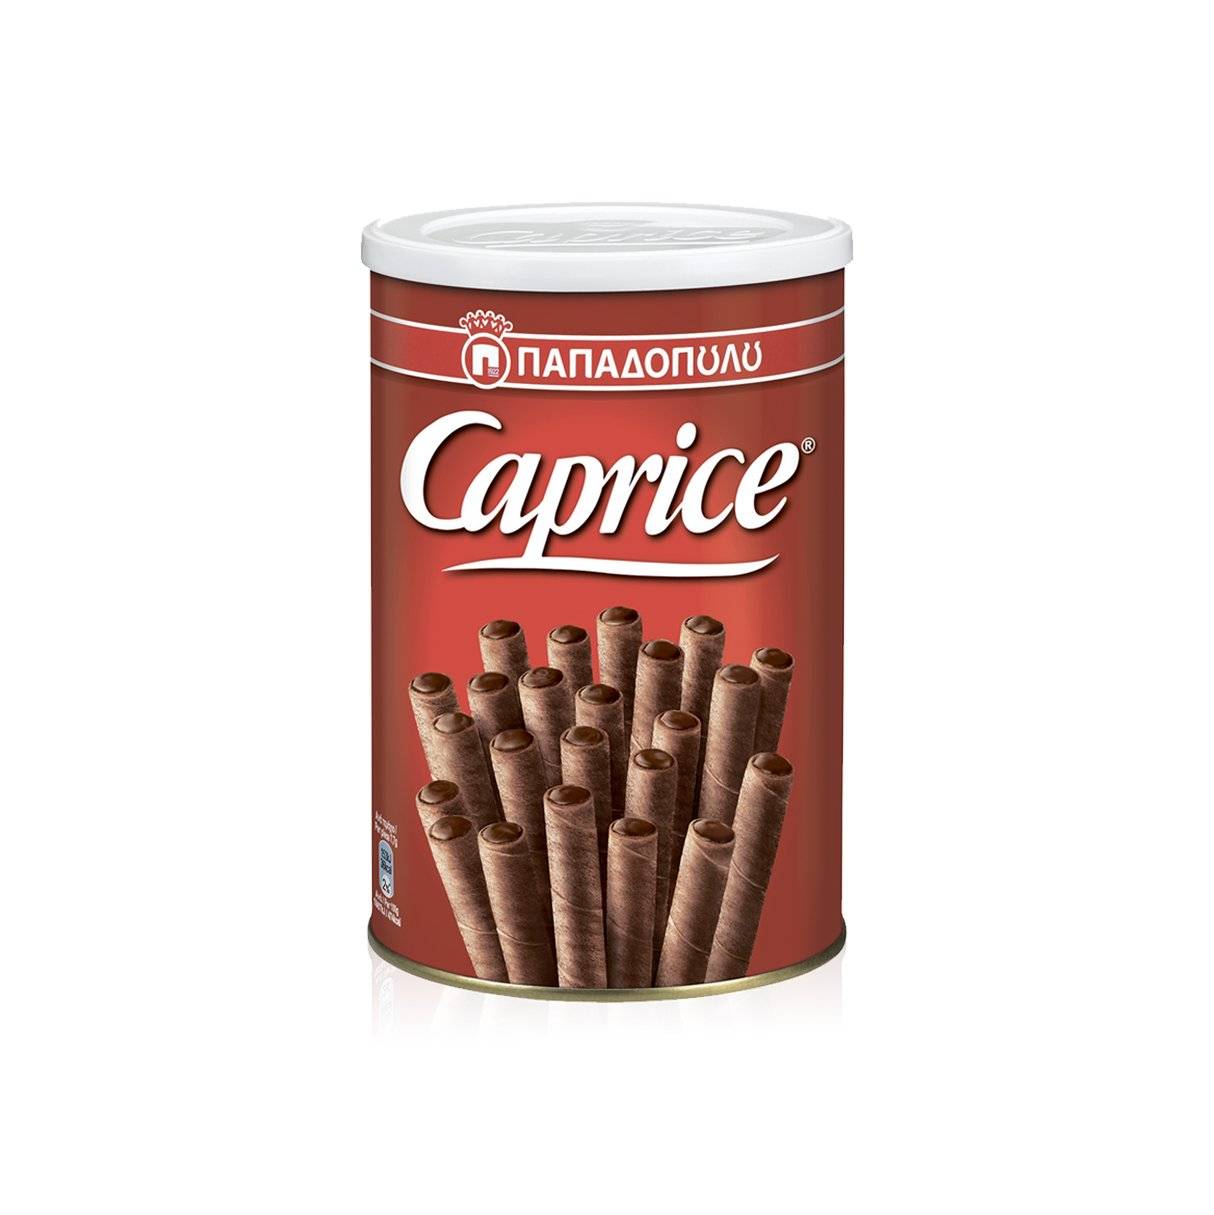 Вафли венские с фундуком и шоколадным кремом CAPRICE 250г